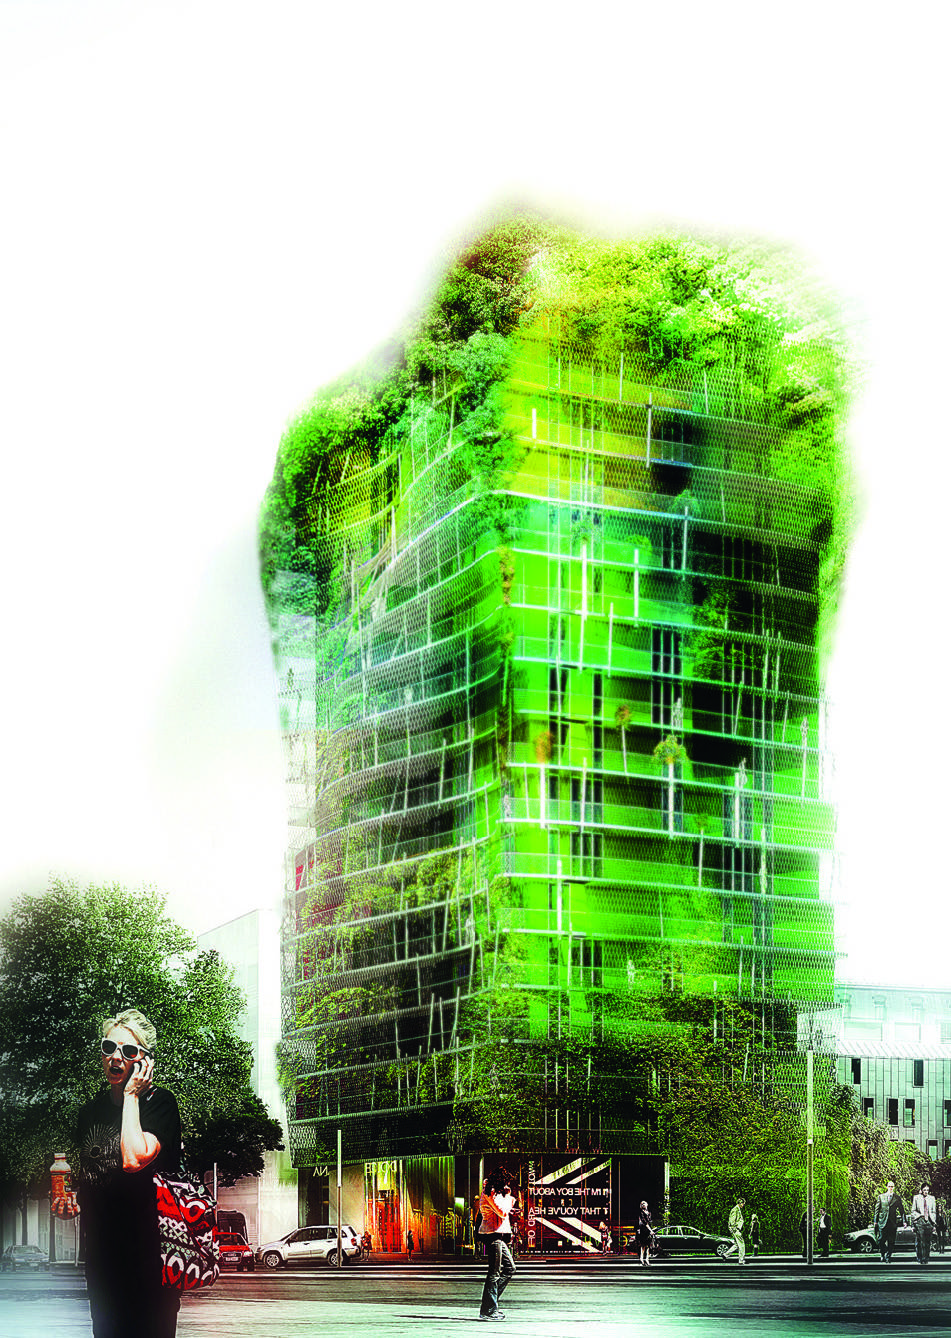 La tour de la Biodiversité d’Edouard François culminera à 50 mètres. Livraison prévue en 2015 dans le 13e arrondissement de Paris.